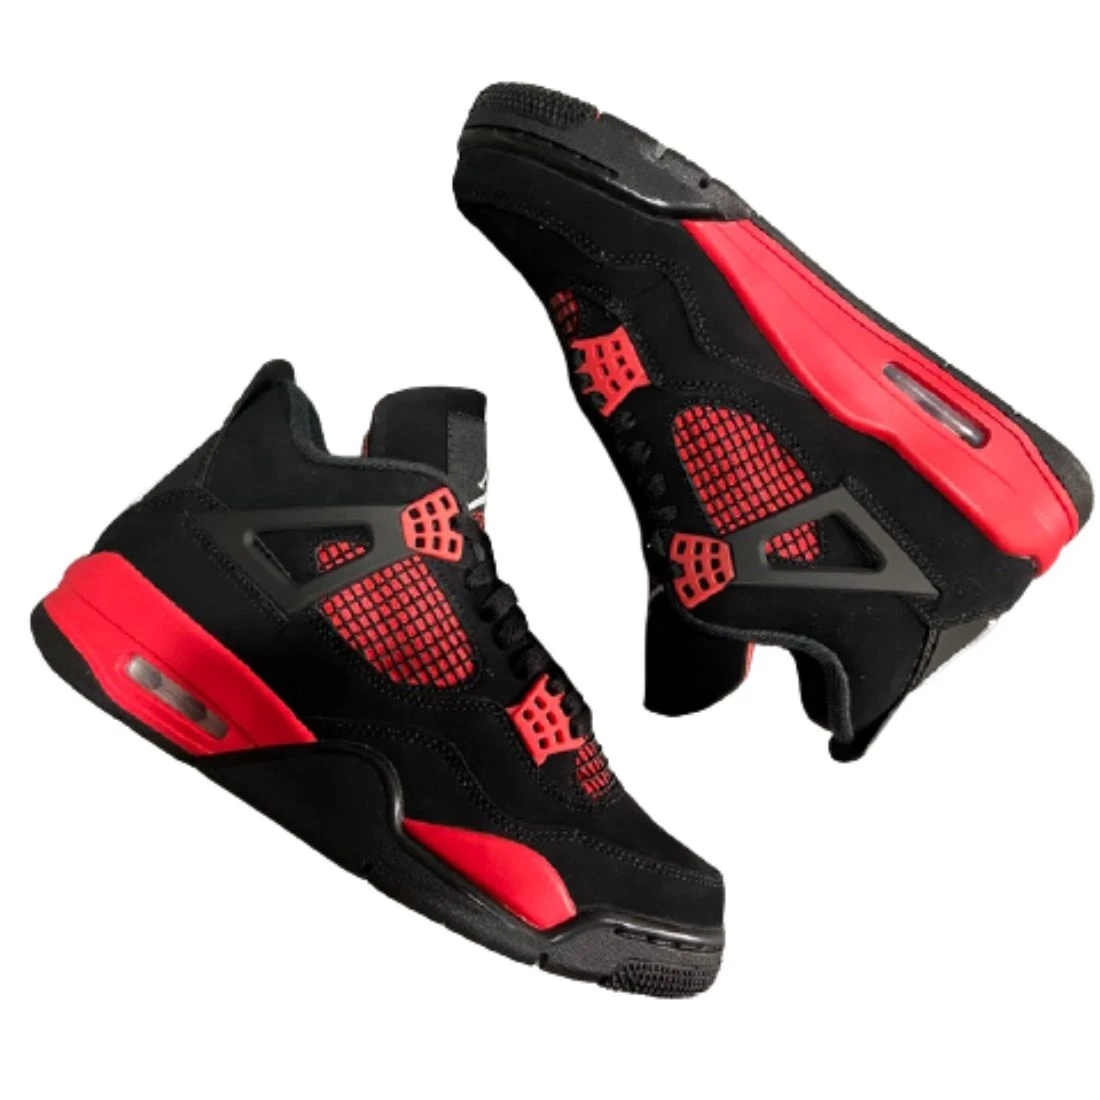 XP Factory Sneakers & Air Jordan 4 Retro Red Thunder CT8527-016